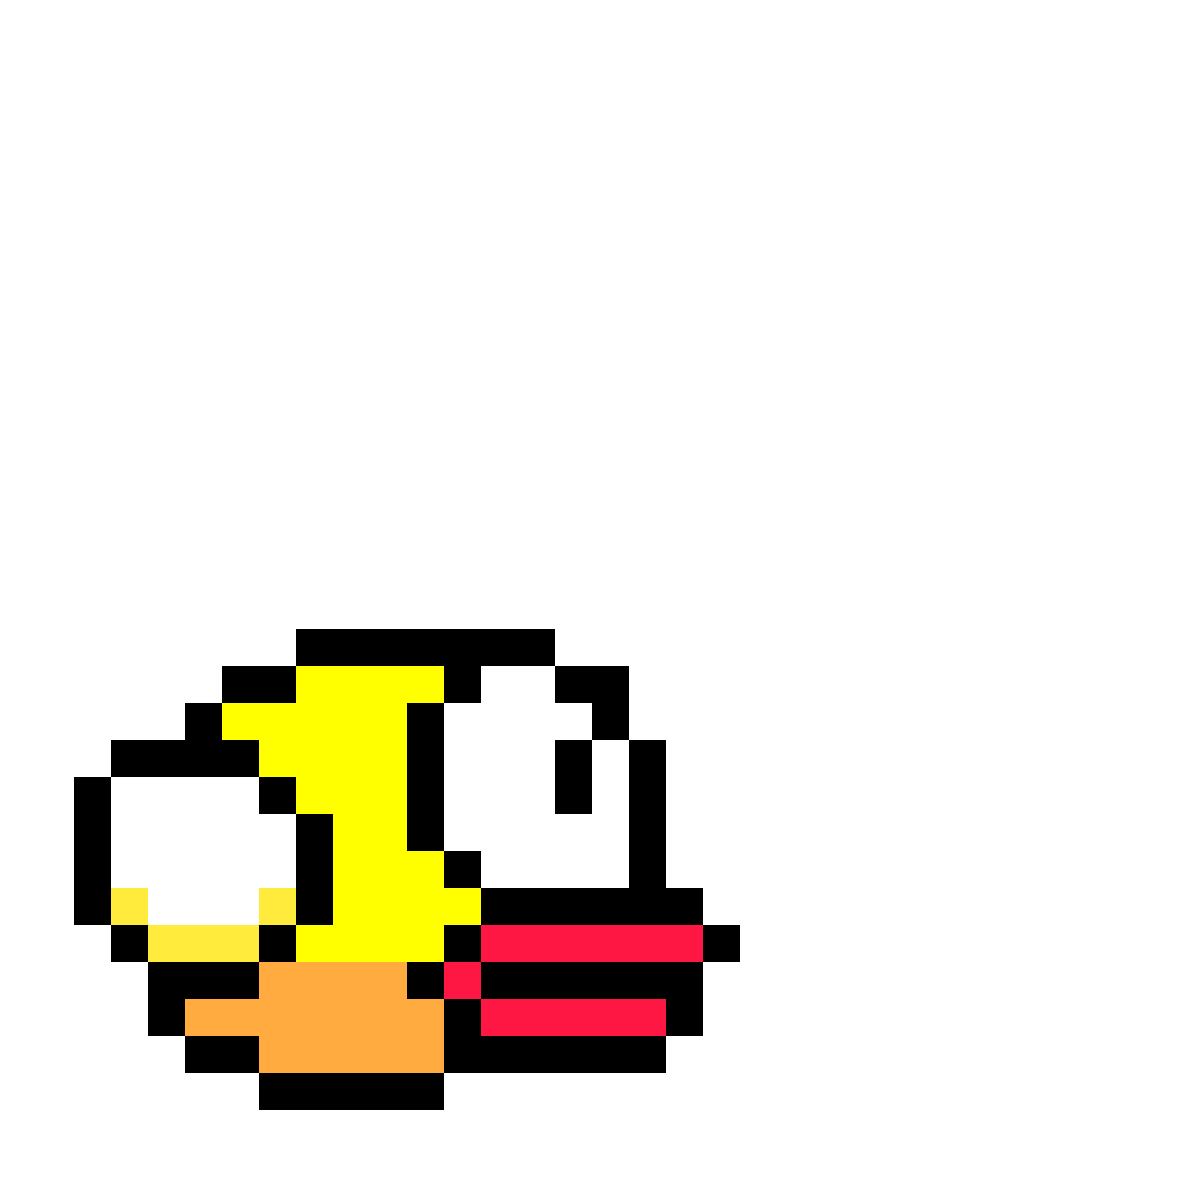 Flappy bird pixel art PNG Gambar latar belakang Transparan